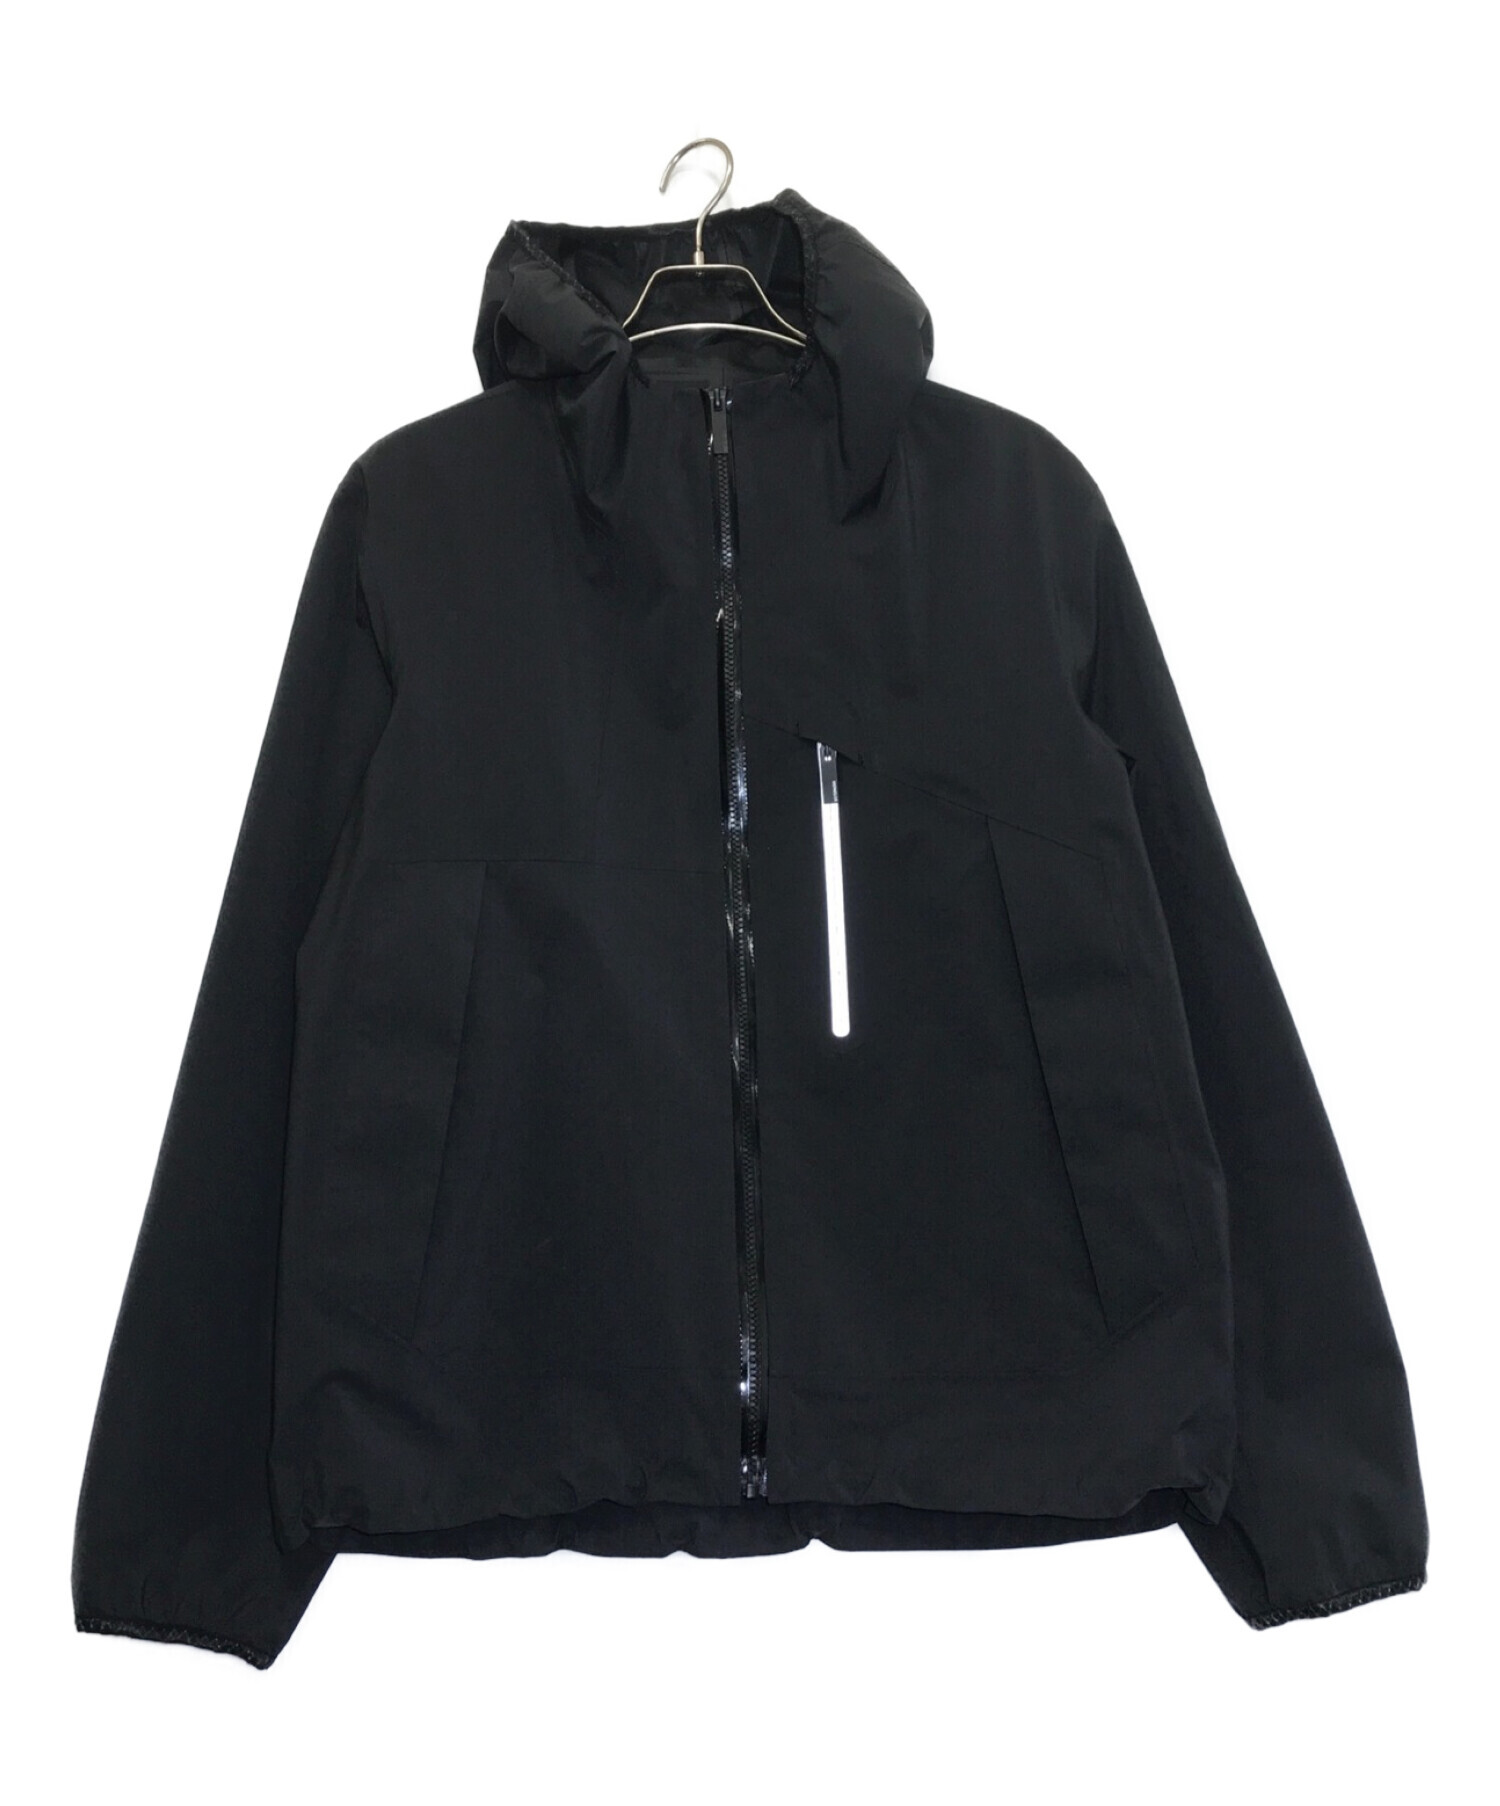 MONCLER (モンクレール) sattouf jacket ブラック サイズ:3